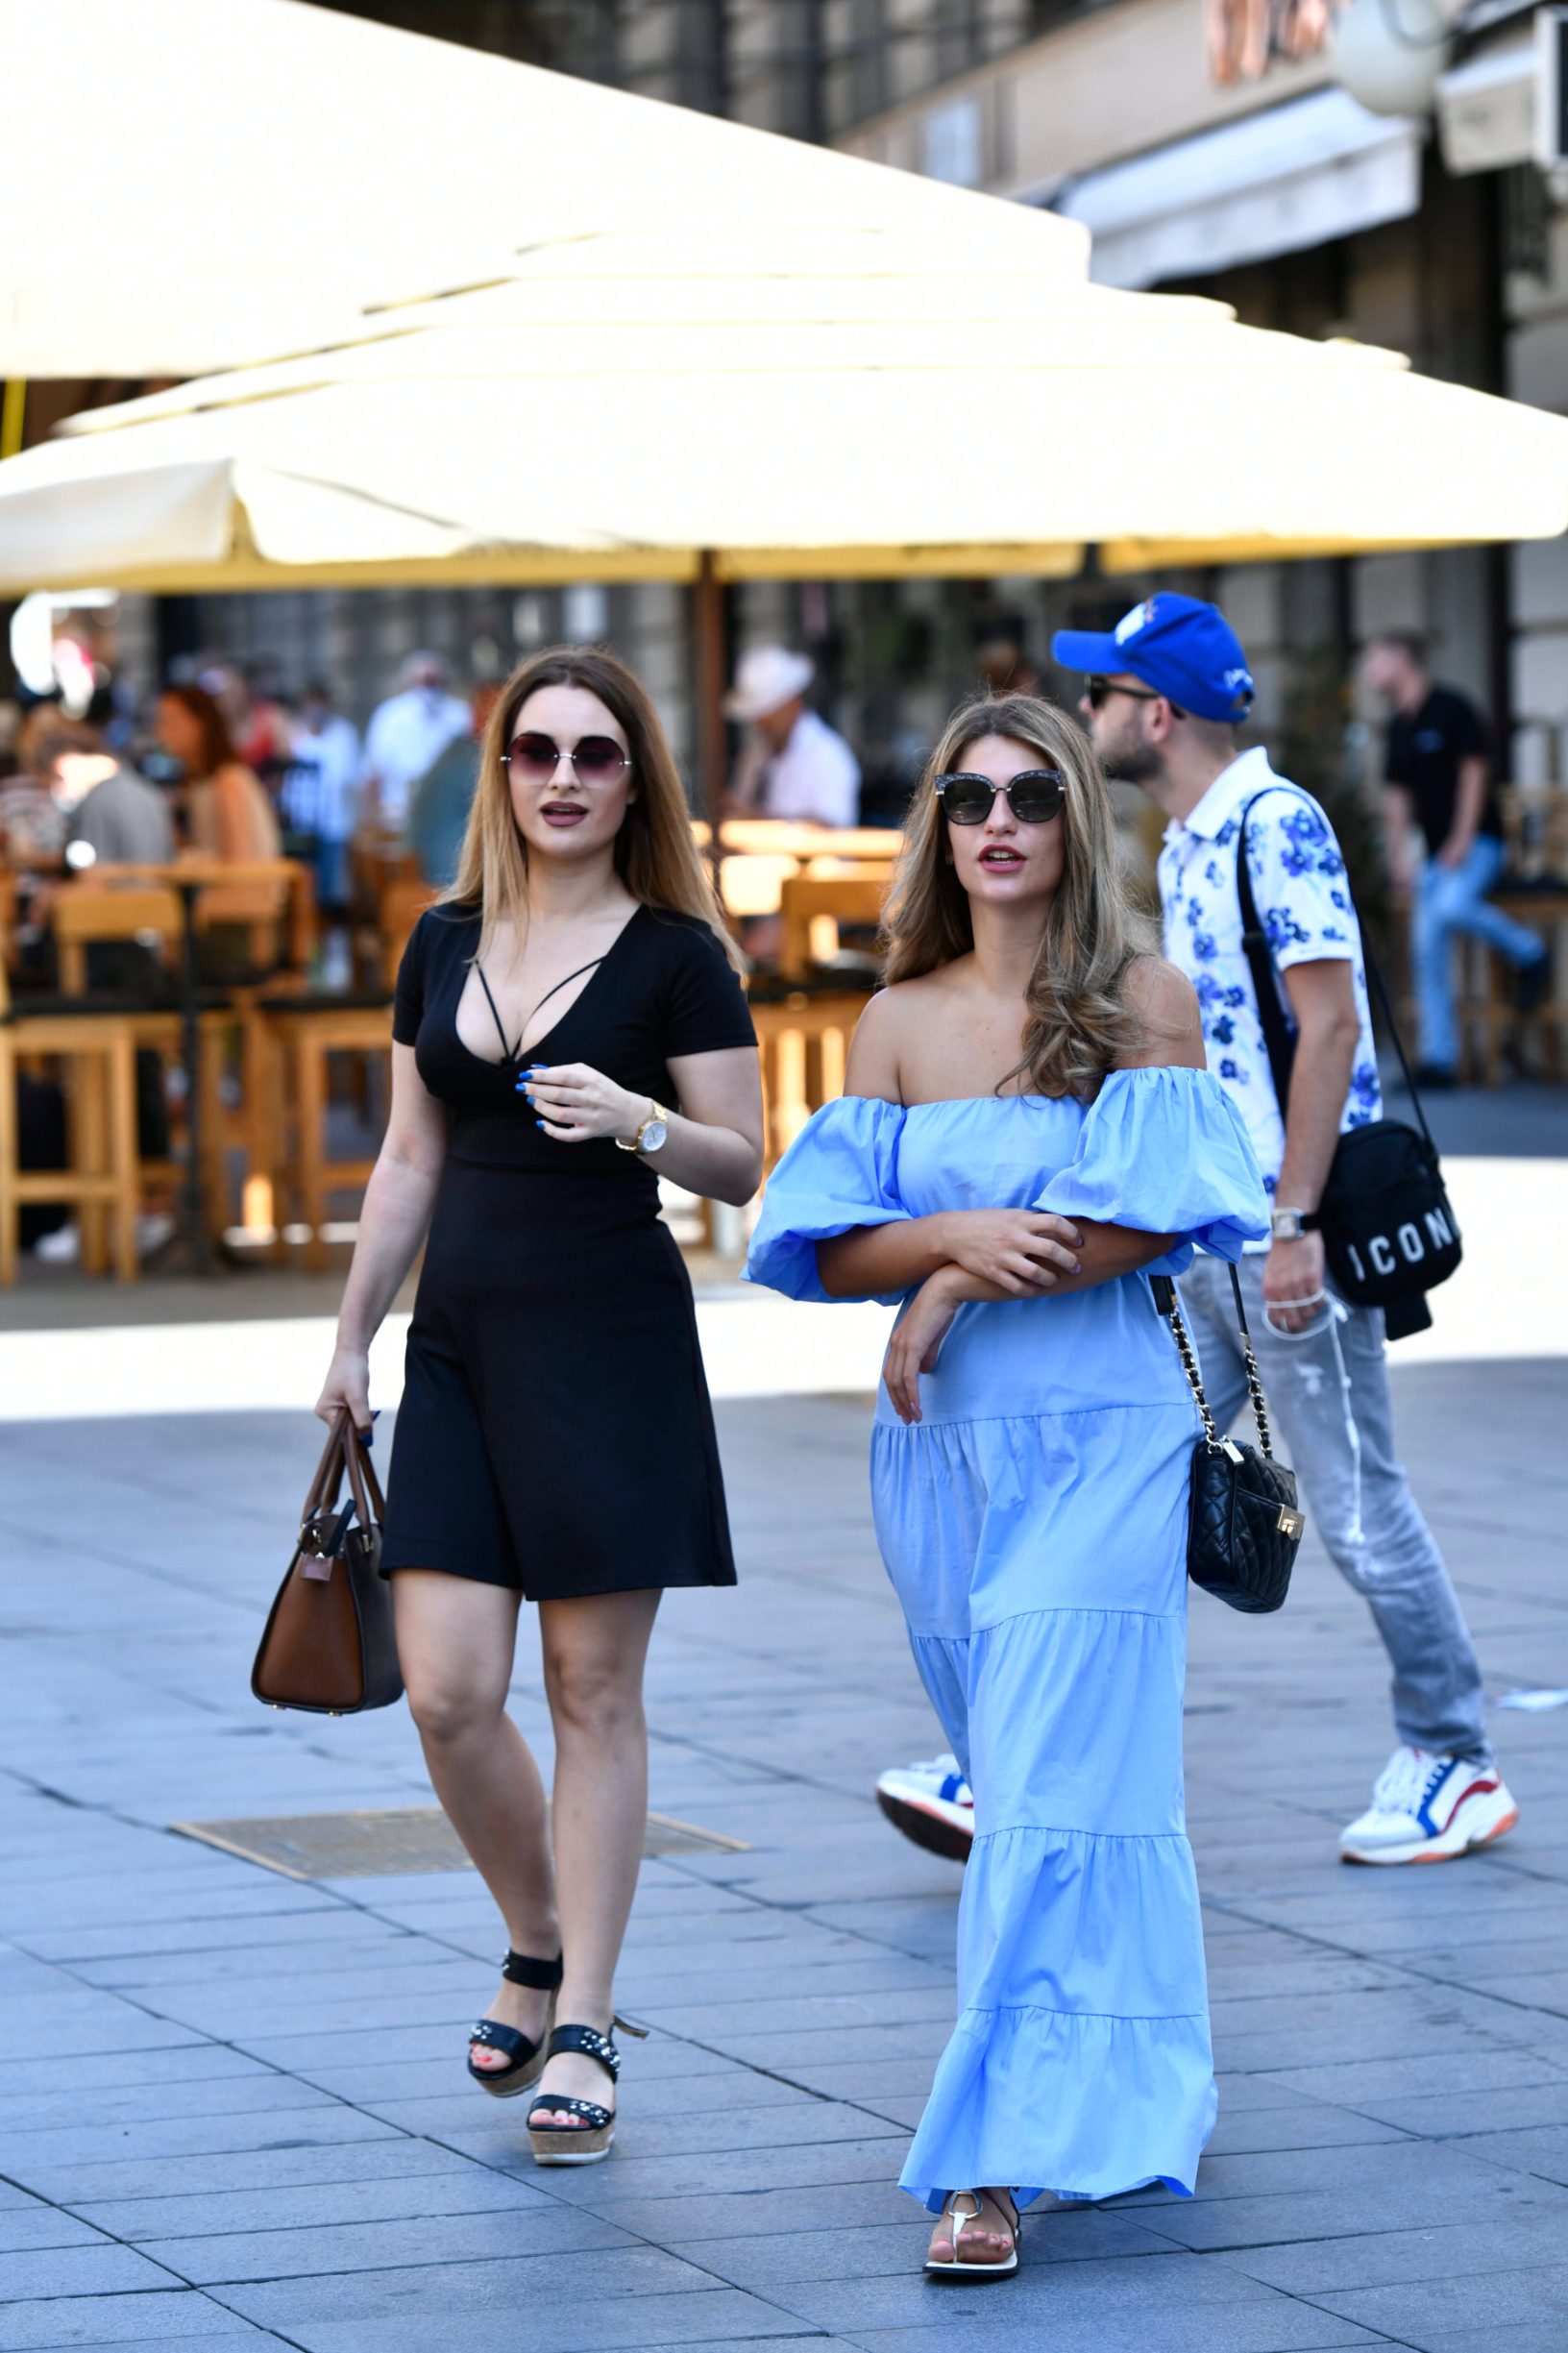 Zagreb, 290820.
Modni stilovi zagrebackih djevojaka za ljeto u centru grada.
Foto: Ronald Gorsic / CROPIX